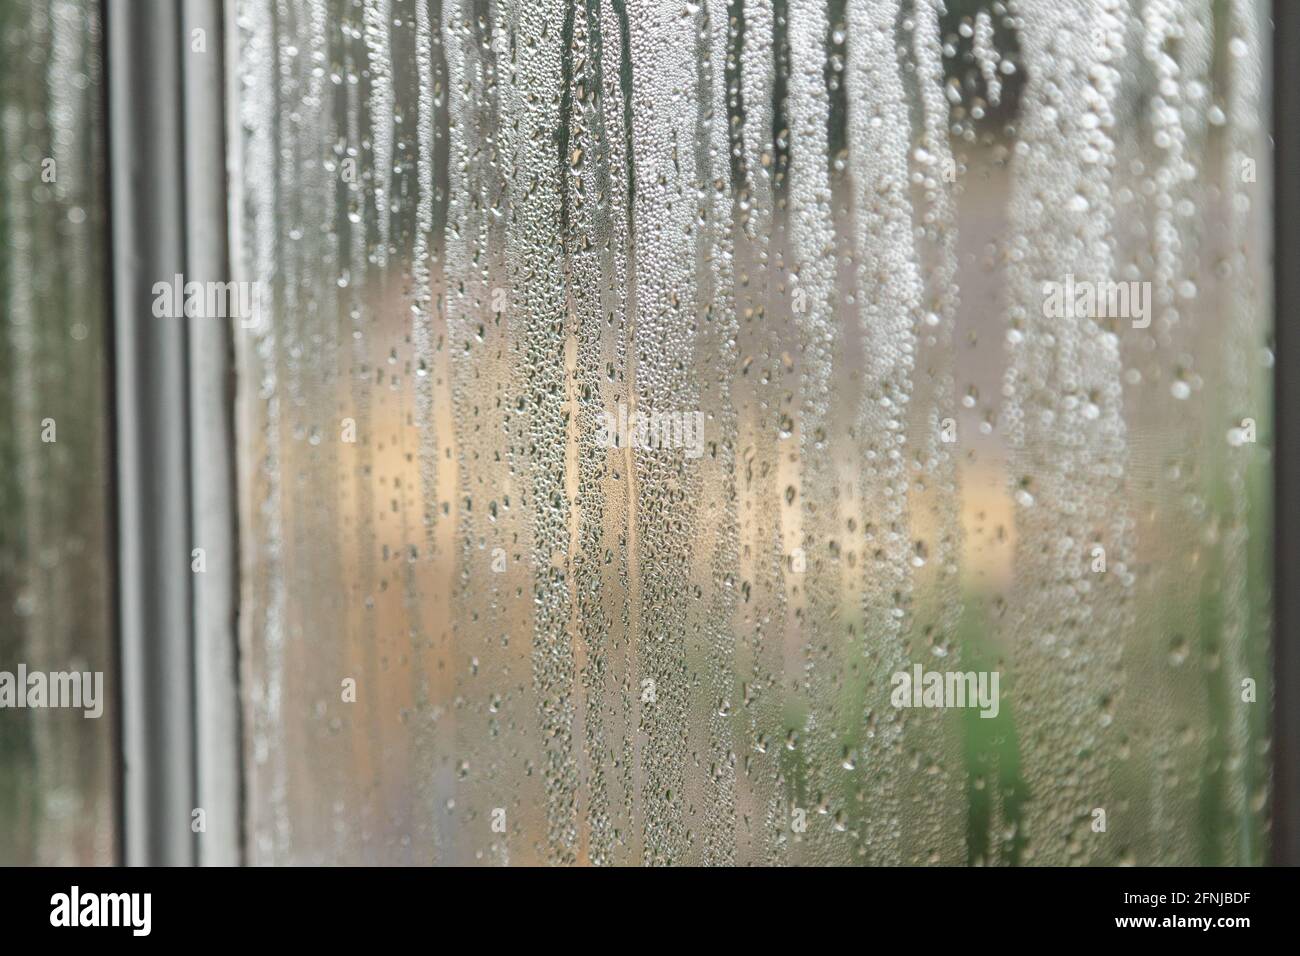 Fare in modo che si formi condensa sul vetro di una finestra. Un problema comune quando i finestrini non sono doppi vetri. Foto Stock